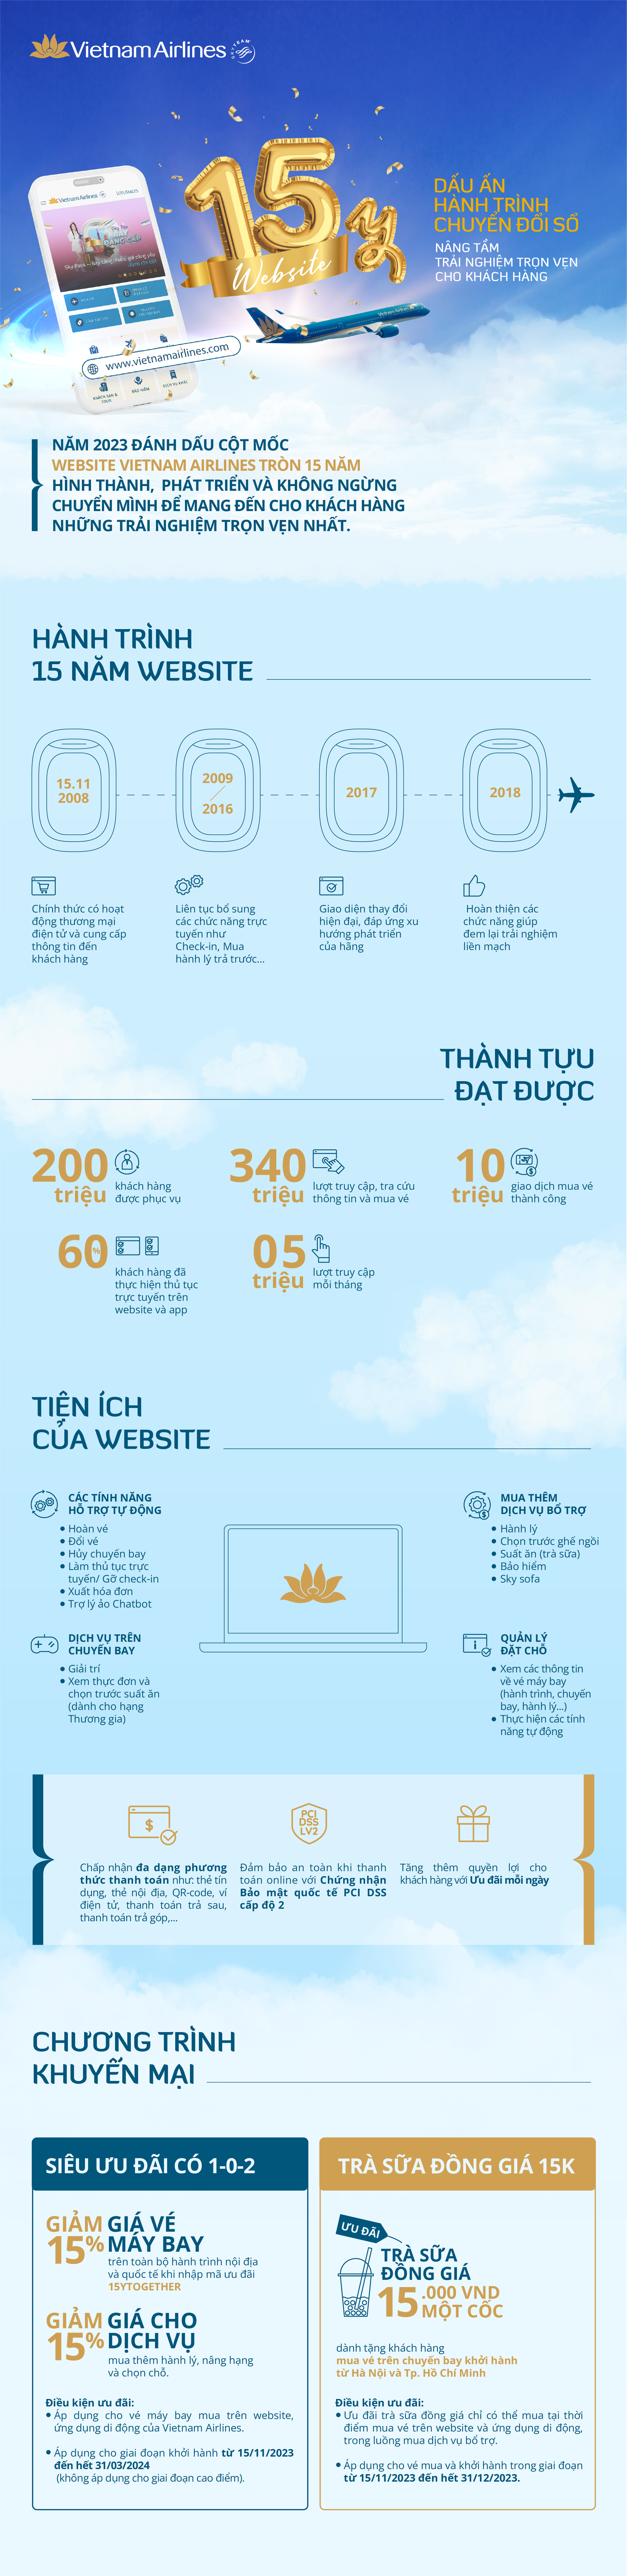 15 năm website, hành trình nâng tầm trải nghiệm khách hàng của Vietnam Airlines - Ảnh 1.